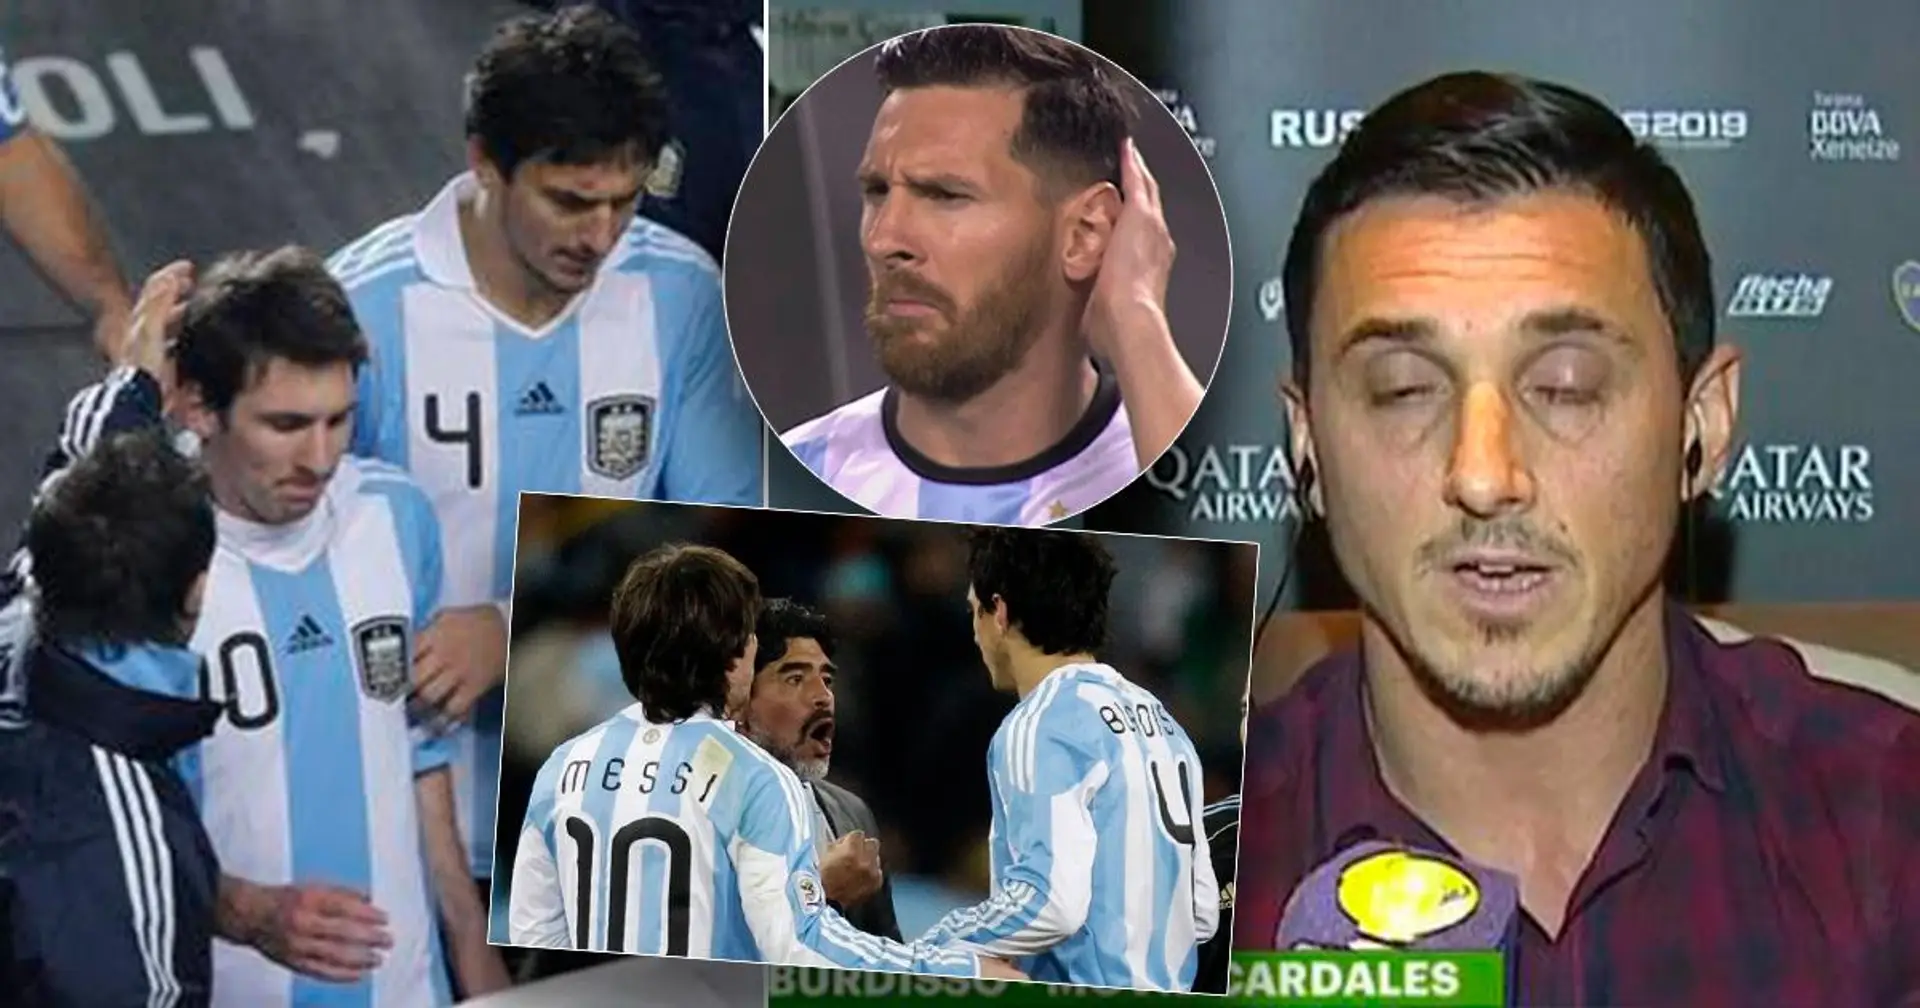 "Je l'ai arrêté'': que s'est-il passé lorsque Messi a failli se battre avec son coéquipier Burdisso